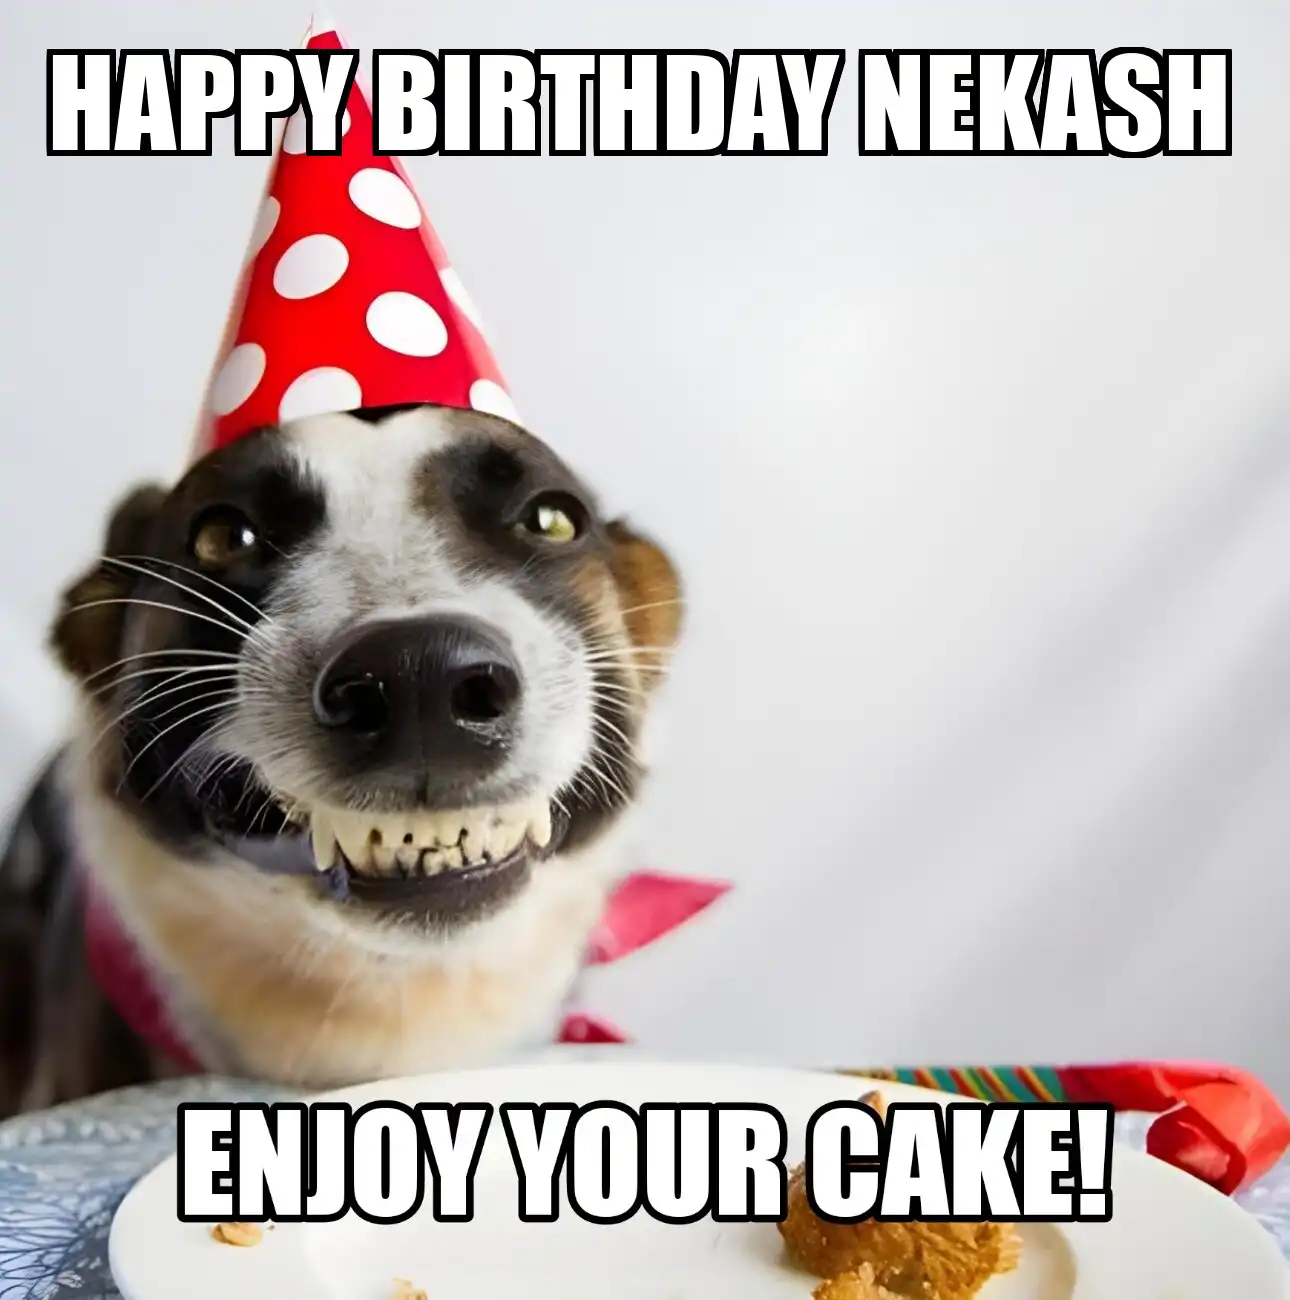 Happy Birthday Nekash Enjoy Your Cake Dog Meme